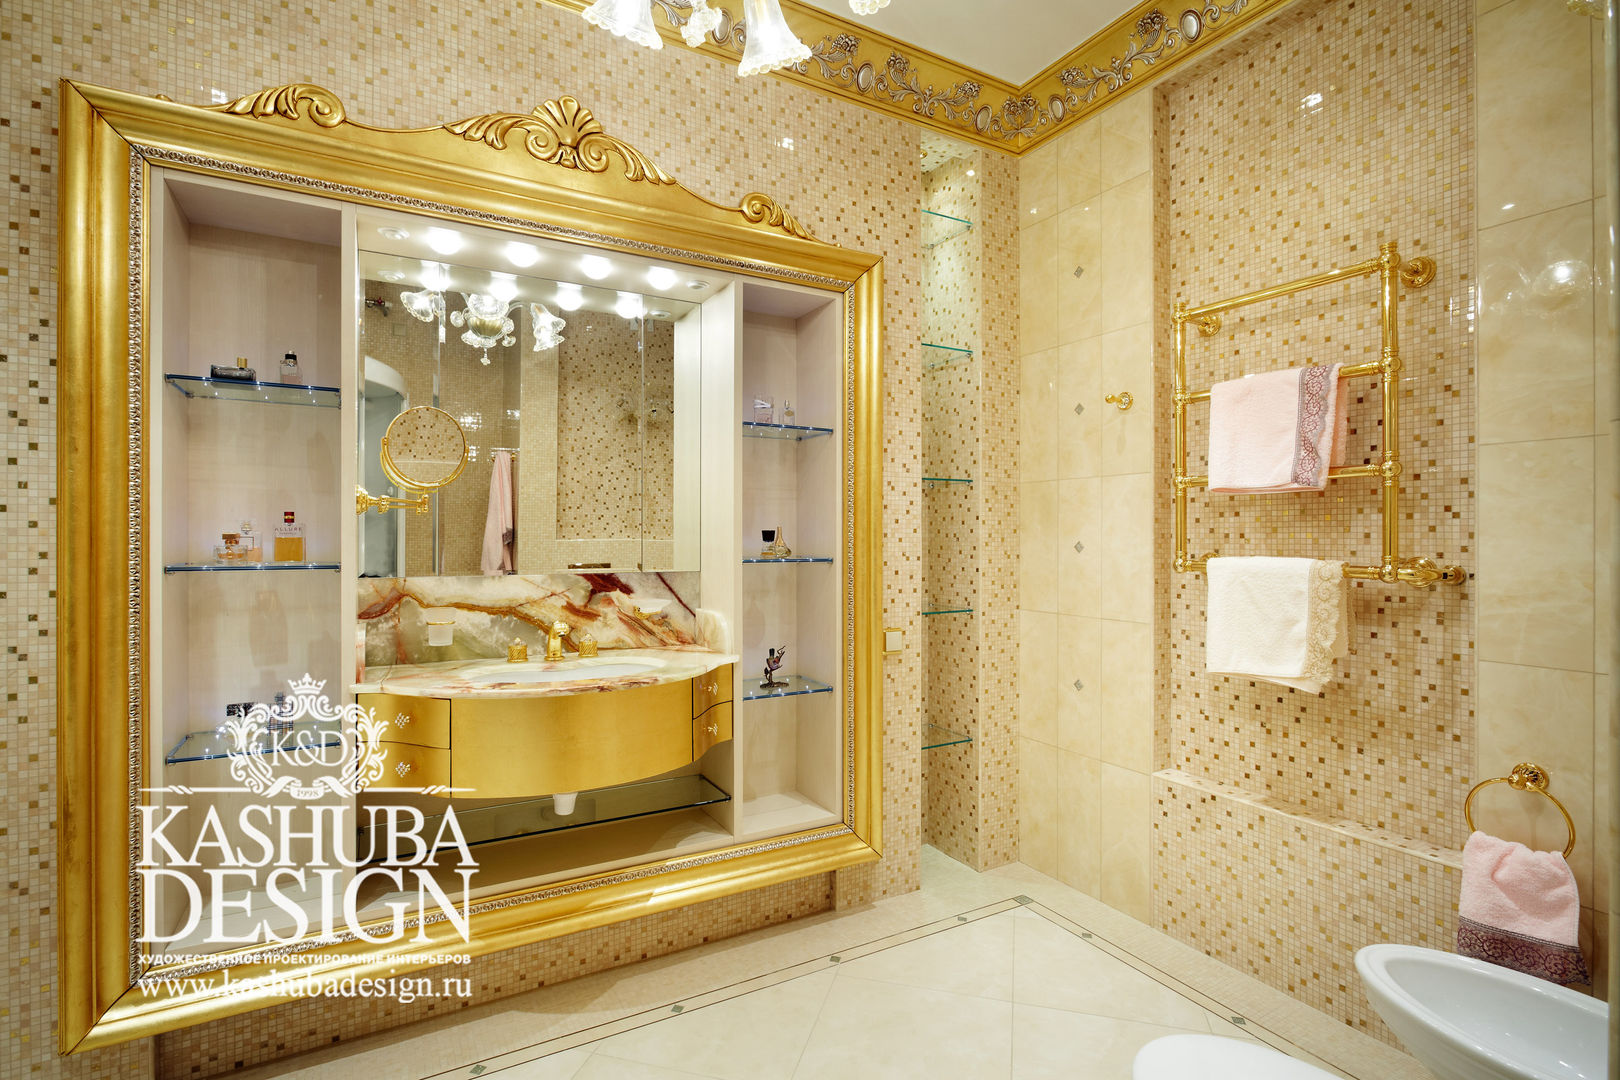 Роскошная классика в интерьере, KASHUBA DESIGN KASHUBA DESIGN Bathroom